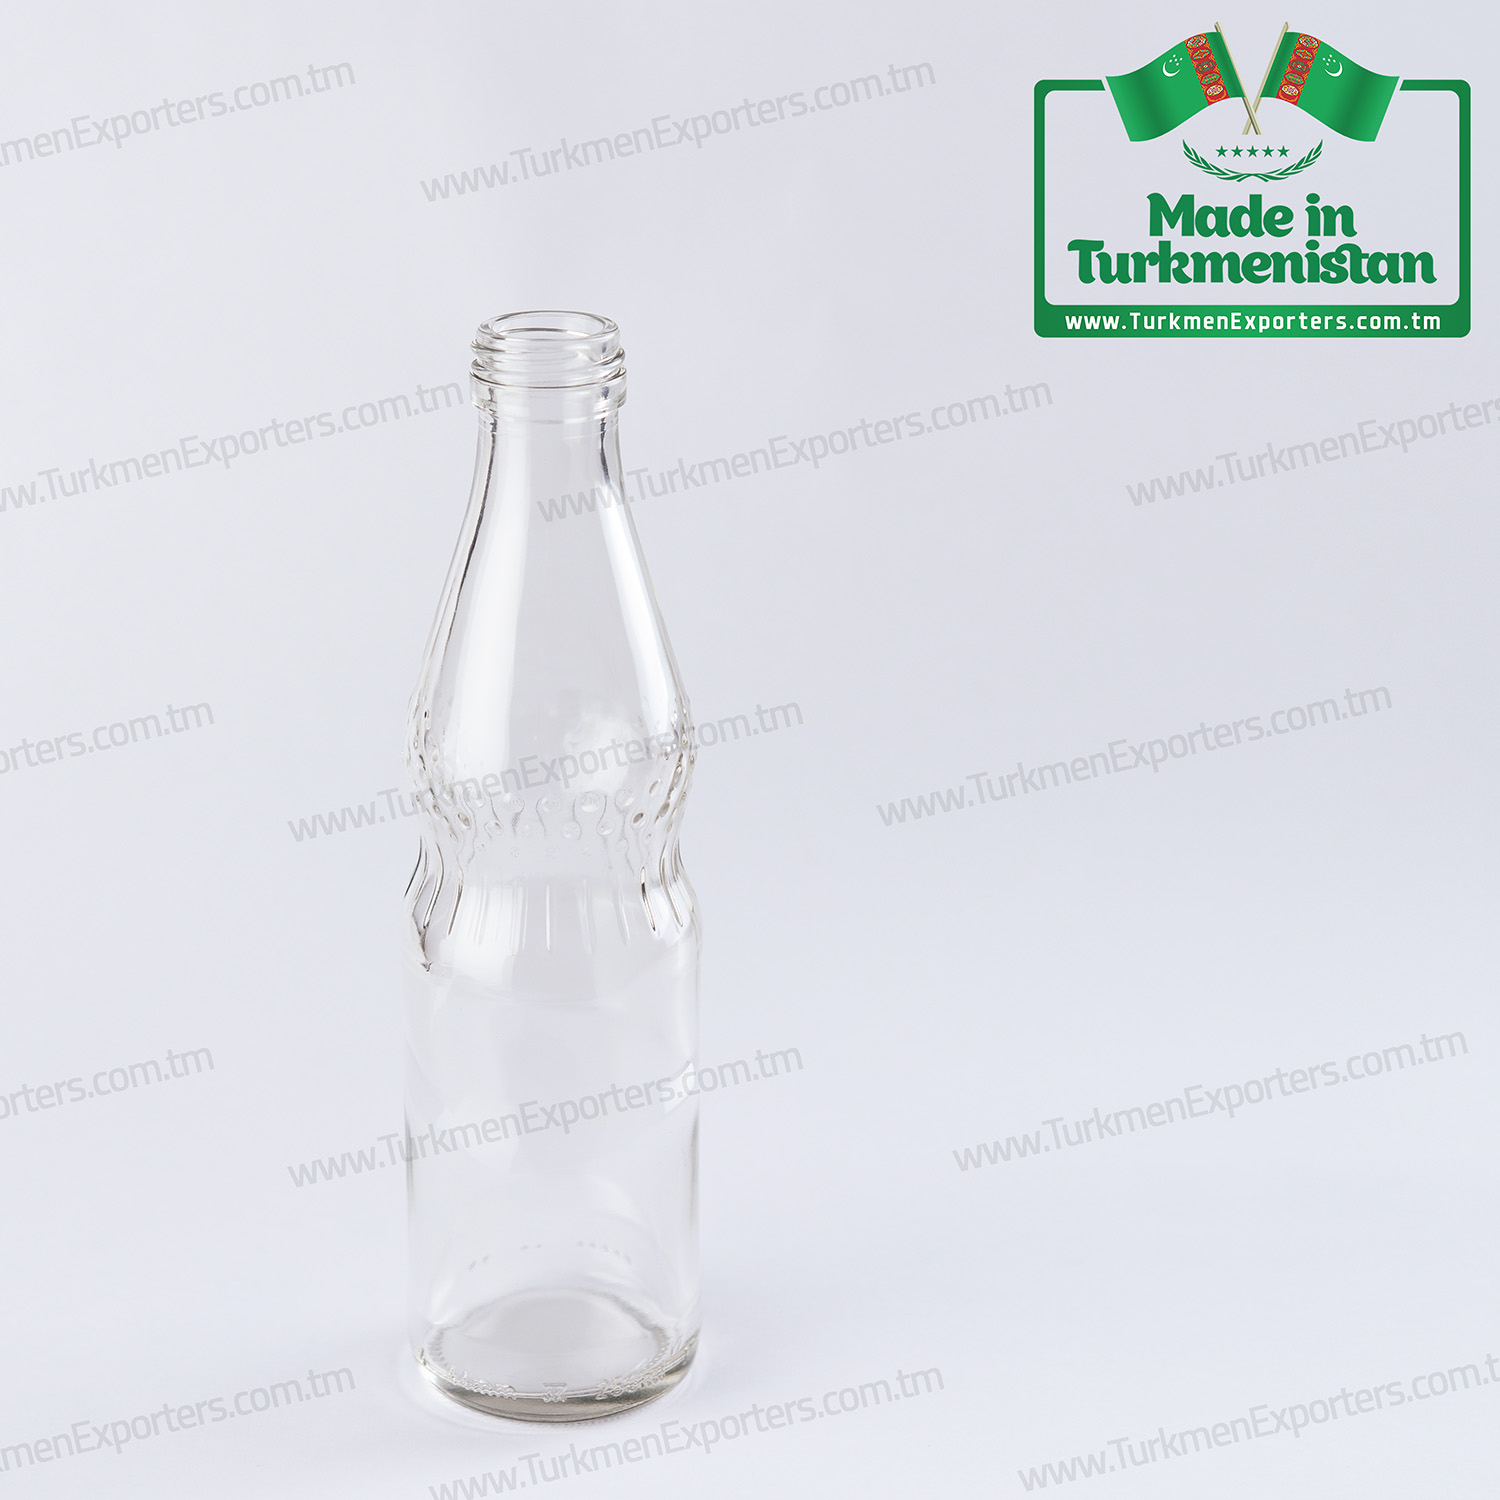 Glass bottles for non-alcoholic beverages Made in Turkmenistan | Turkmen Ayna Onumleri enterprise